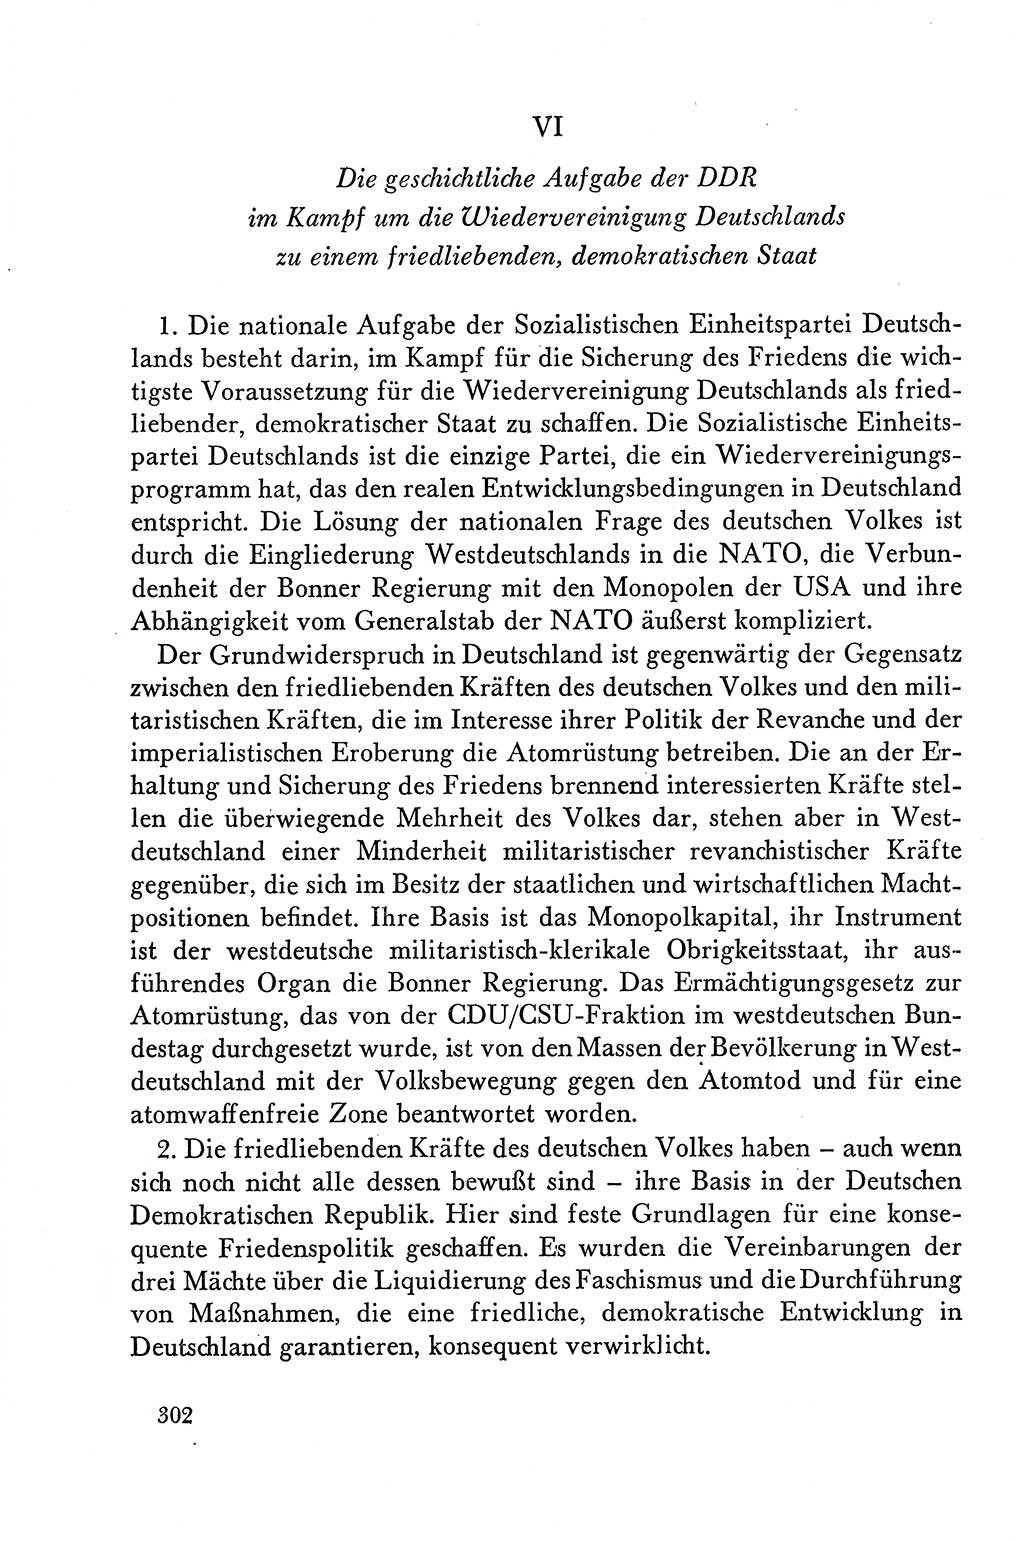 Dokumente der Sozialistischen Einheitspartei Deutschlands (SED) [Deutsche Demokratische Republik (DDR)] 1958-1959, Seite 302 (Dok. SED DDR 1958-1959, S. 302)